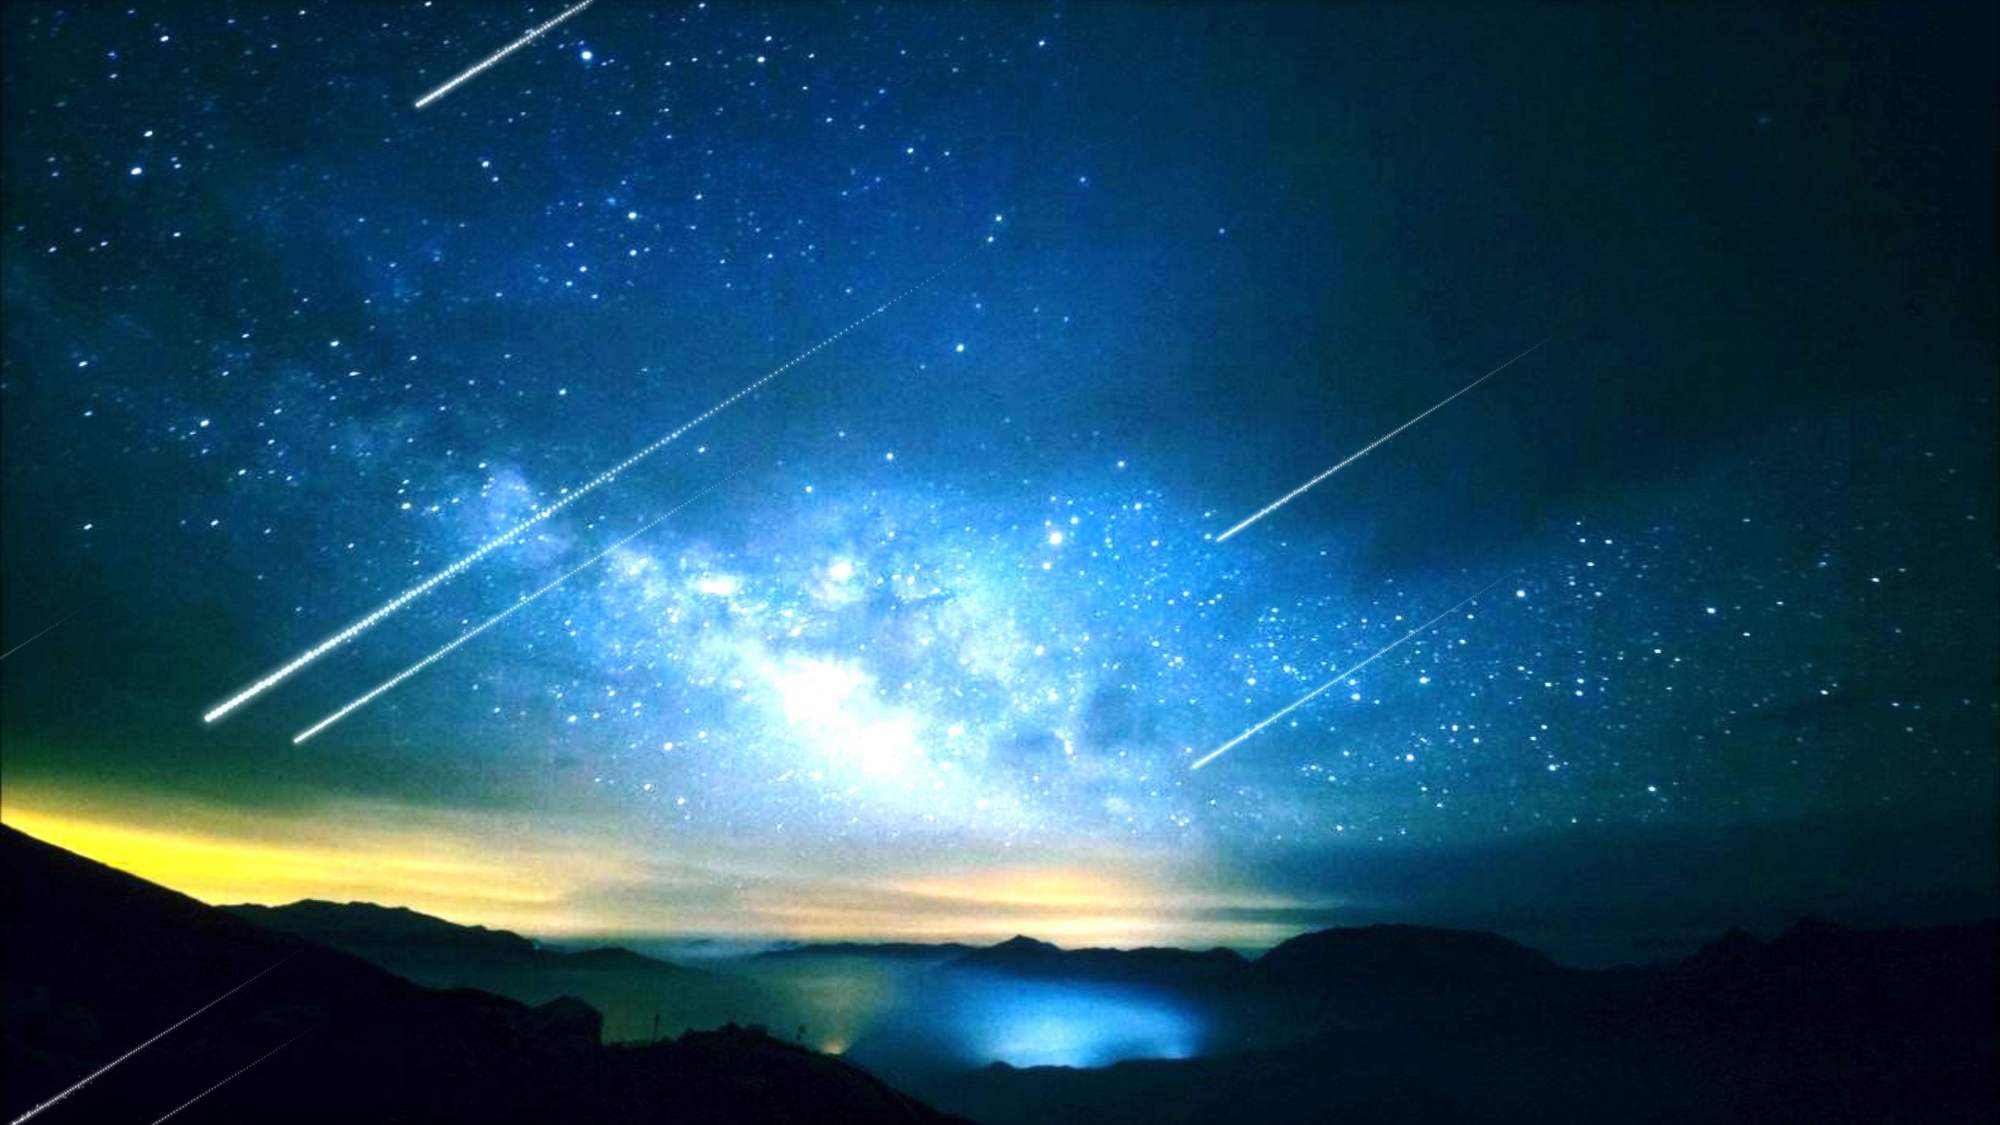 双子座流星雨爆发!每小时多达150颗!天气适合观星吗?